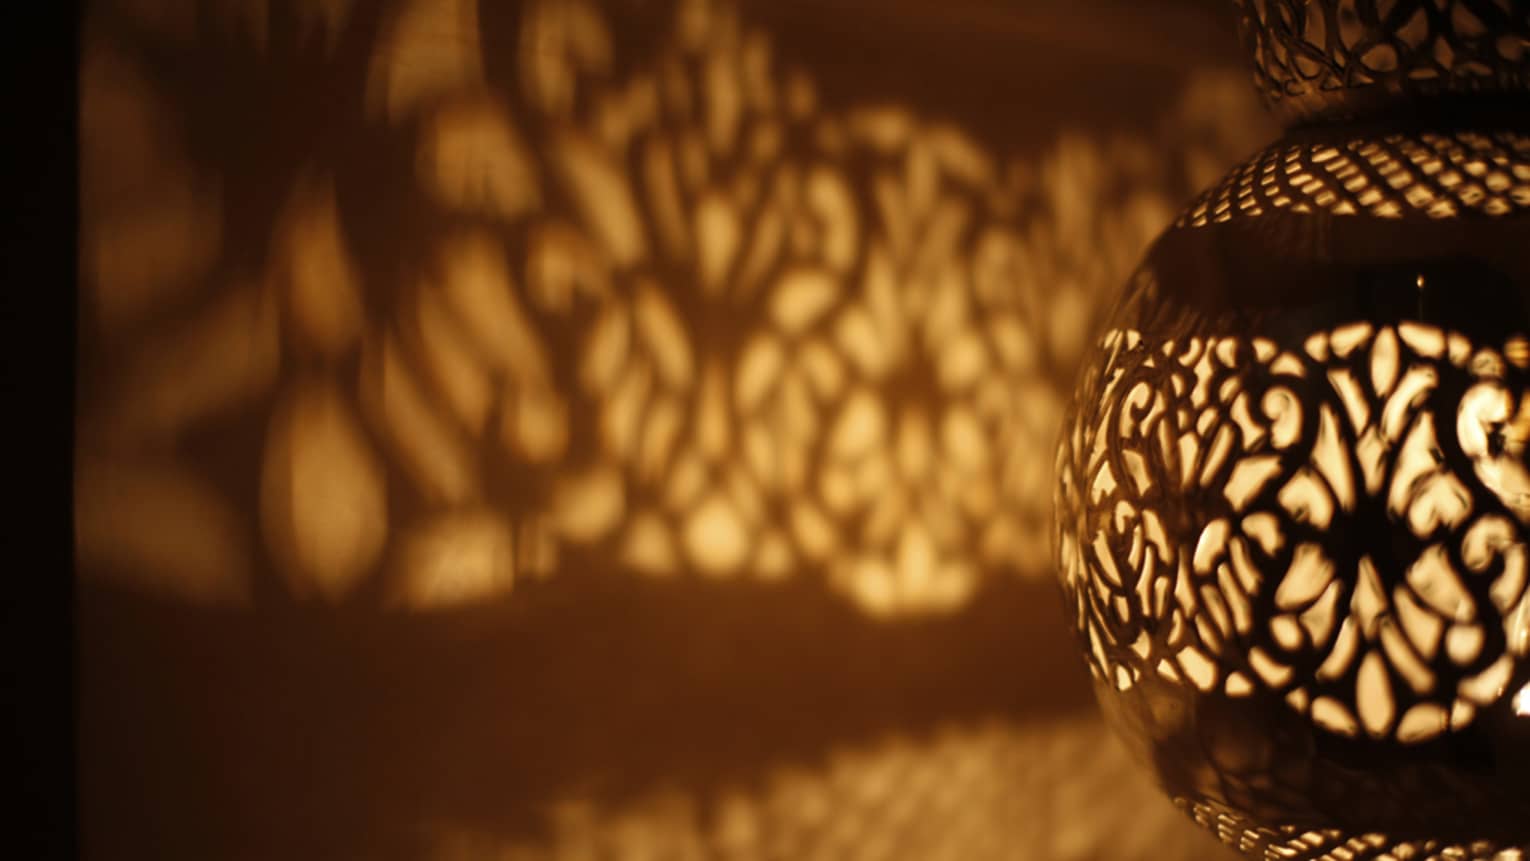 Pattern of light on wall from illuminated Turkish lamp